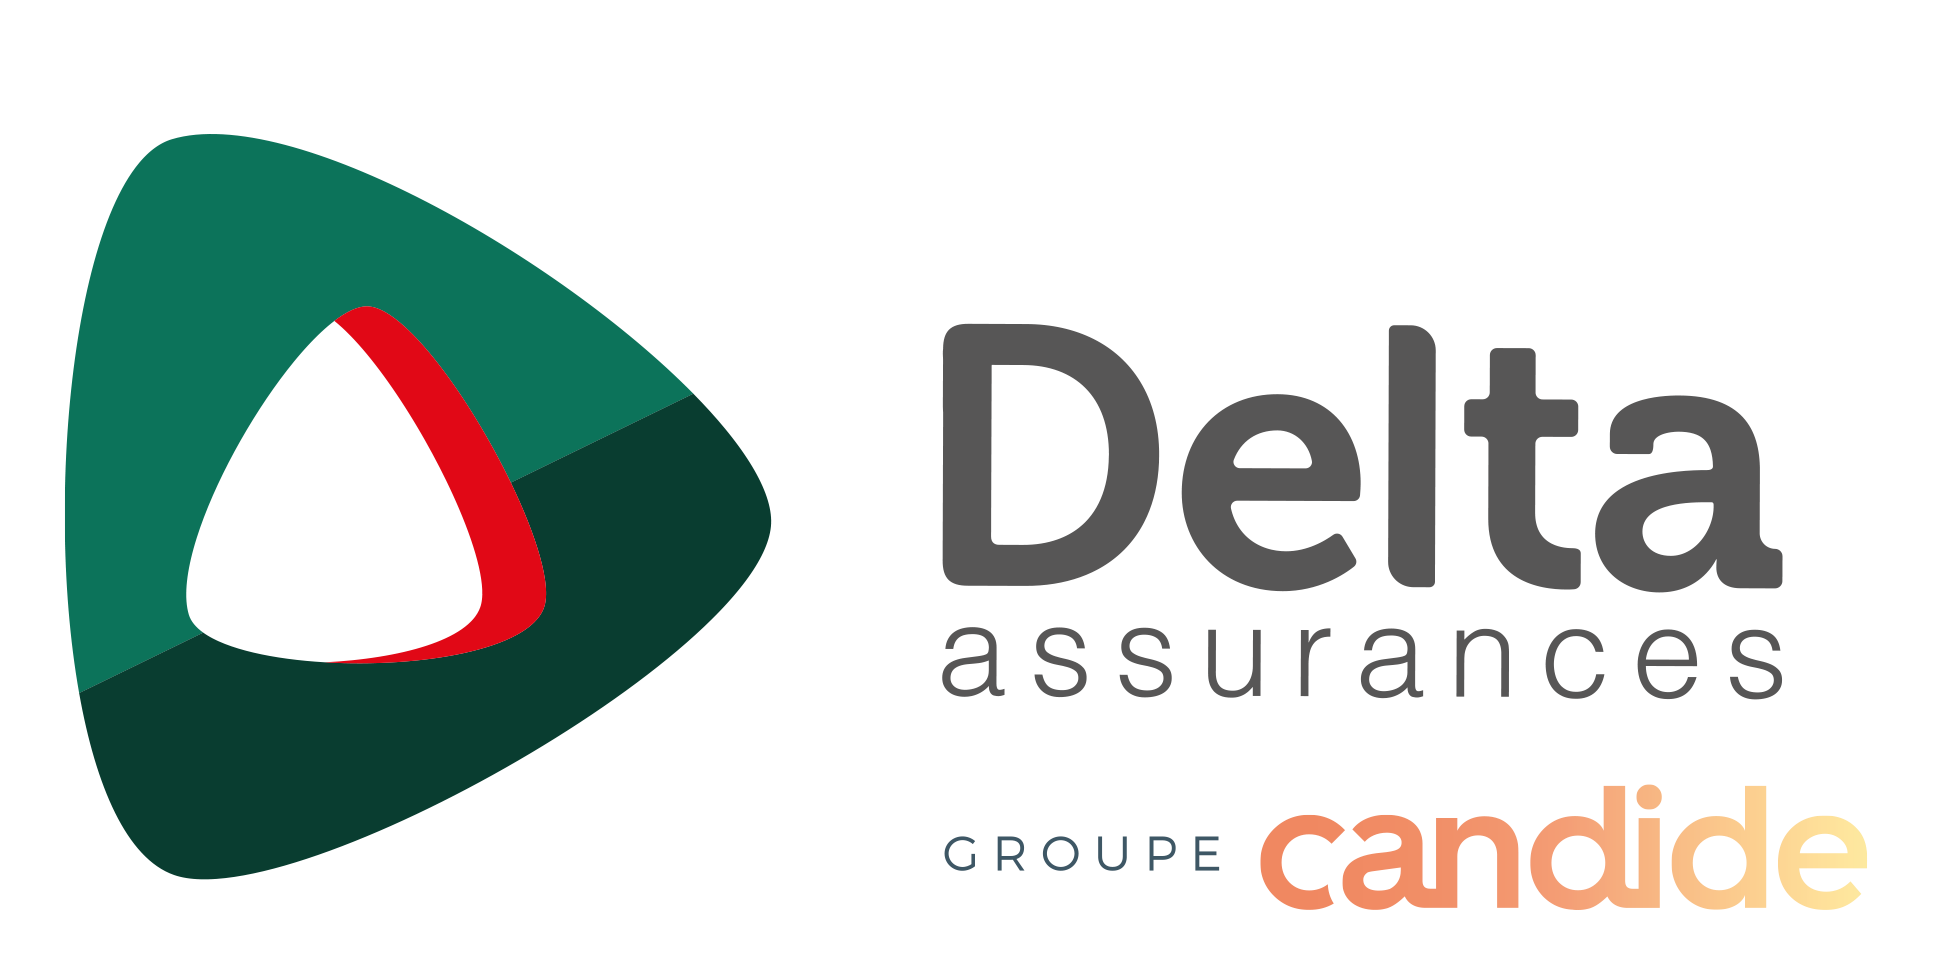 Delta assurances